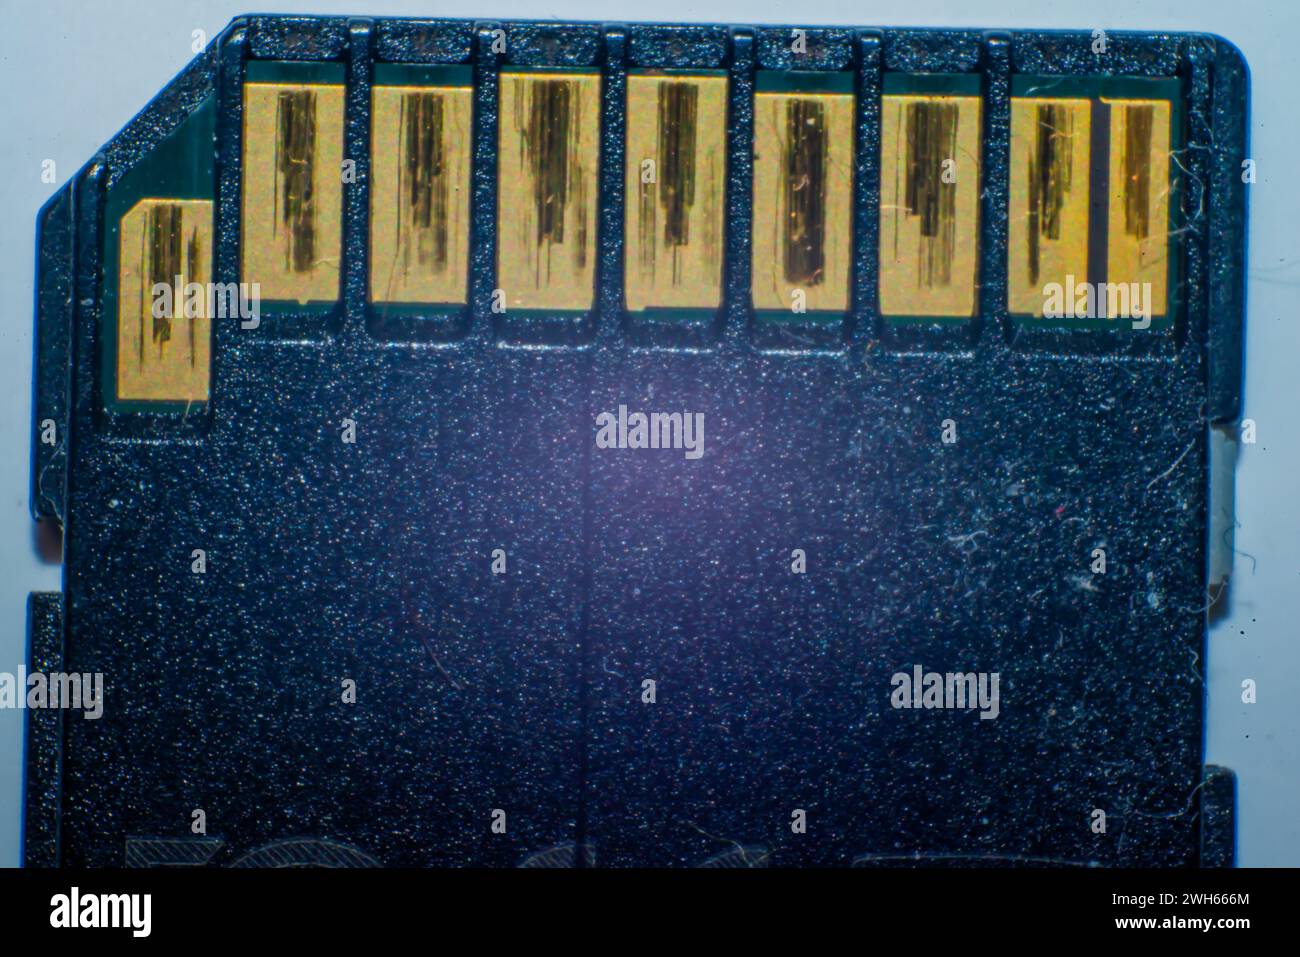 Una foto macro dettagliata di una scheda SD, che mostra la tecnologia compatta per l'archiviazione digitale dei dati e il trasferimento delle informazioni senza problemi. Foto Stock